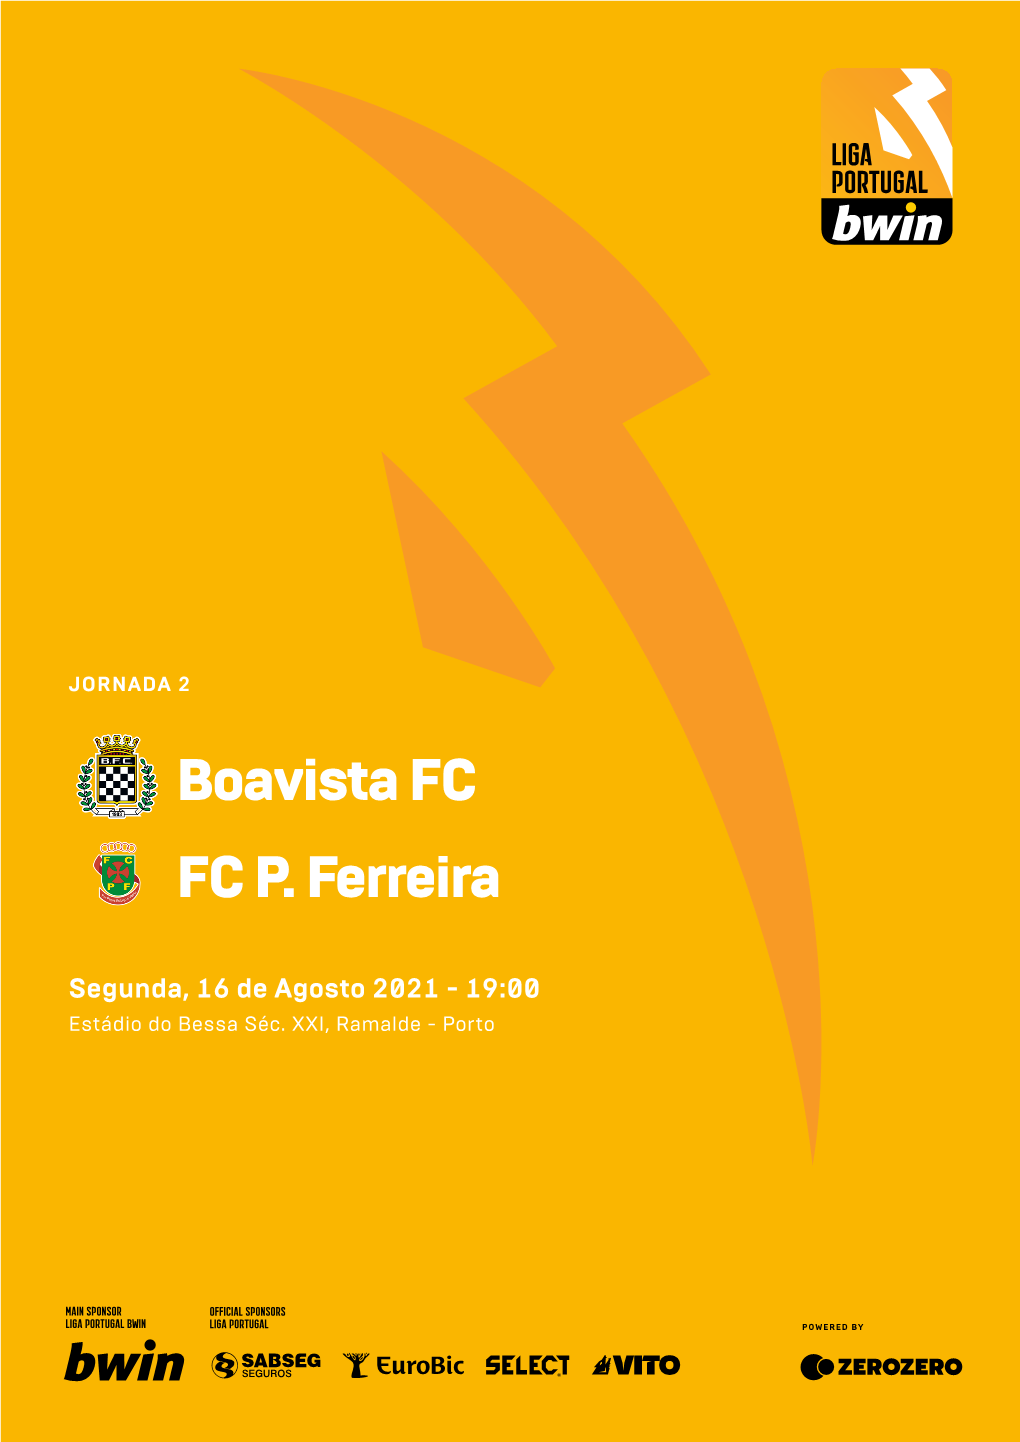 Boavista FC FC P. Ferreira